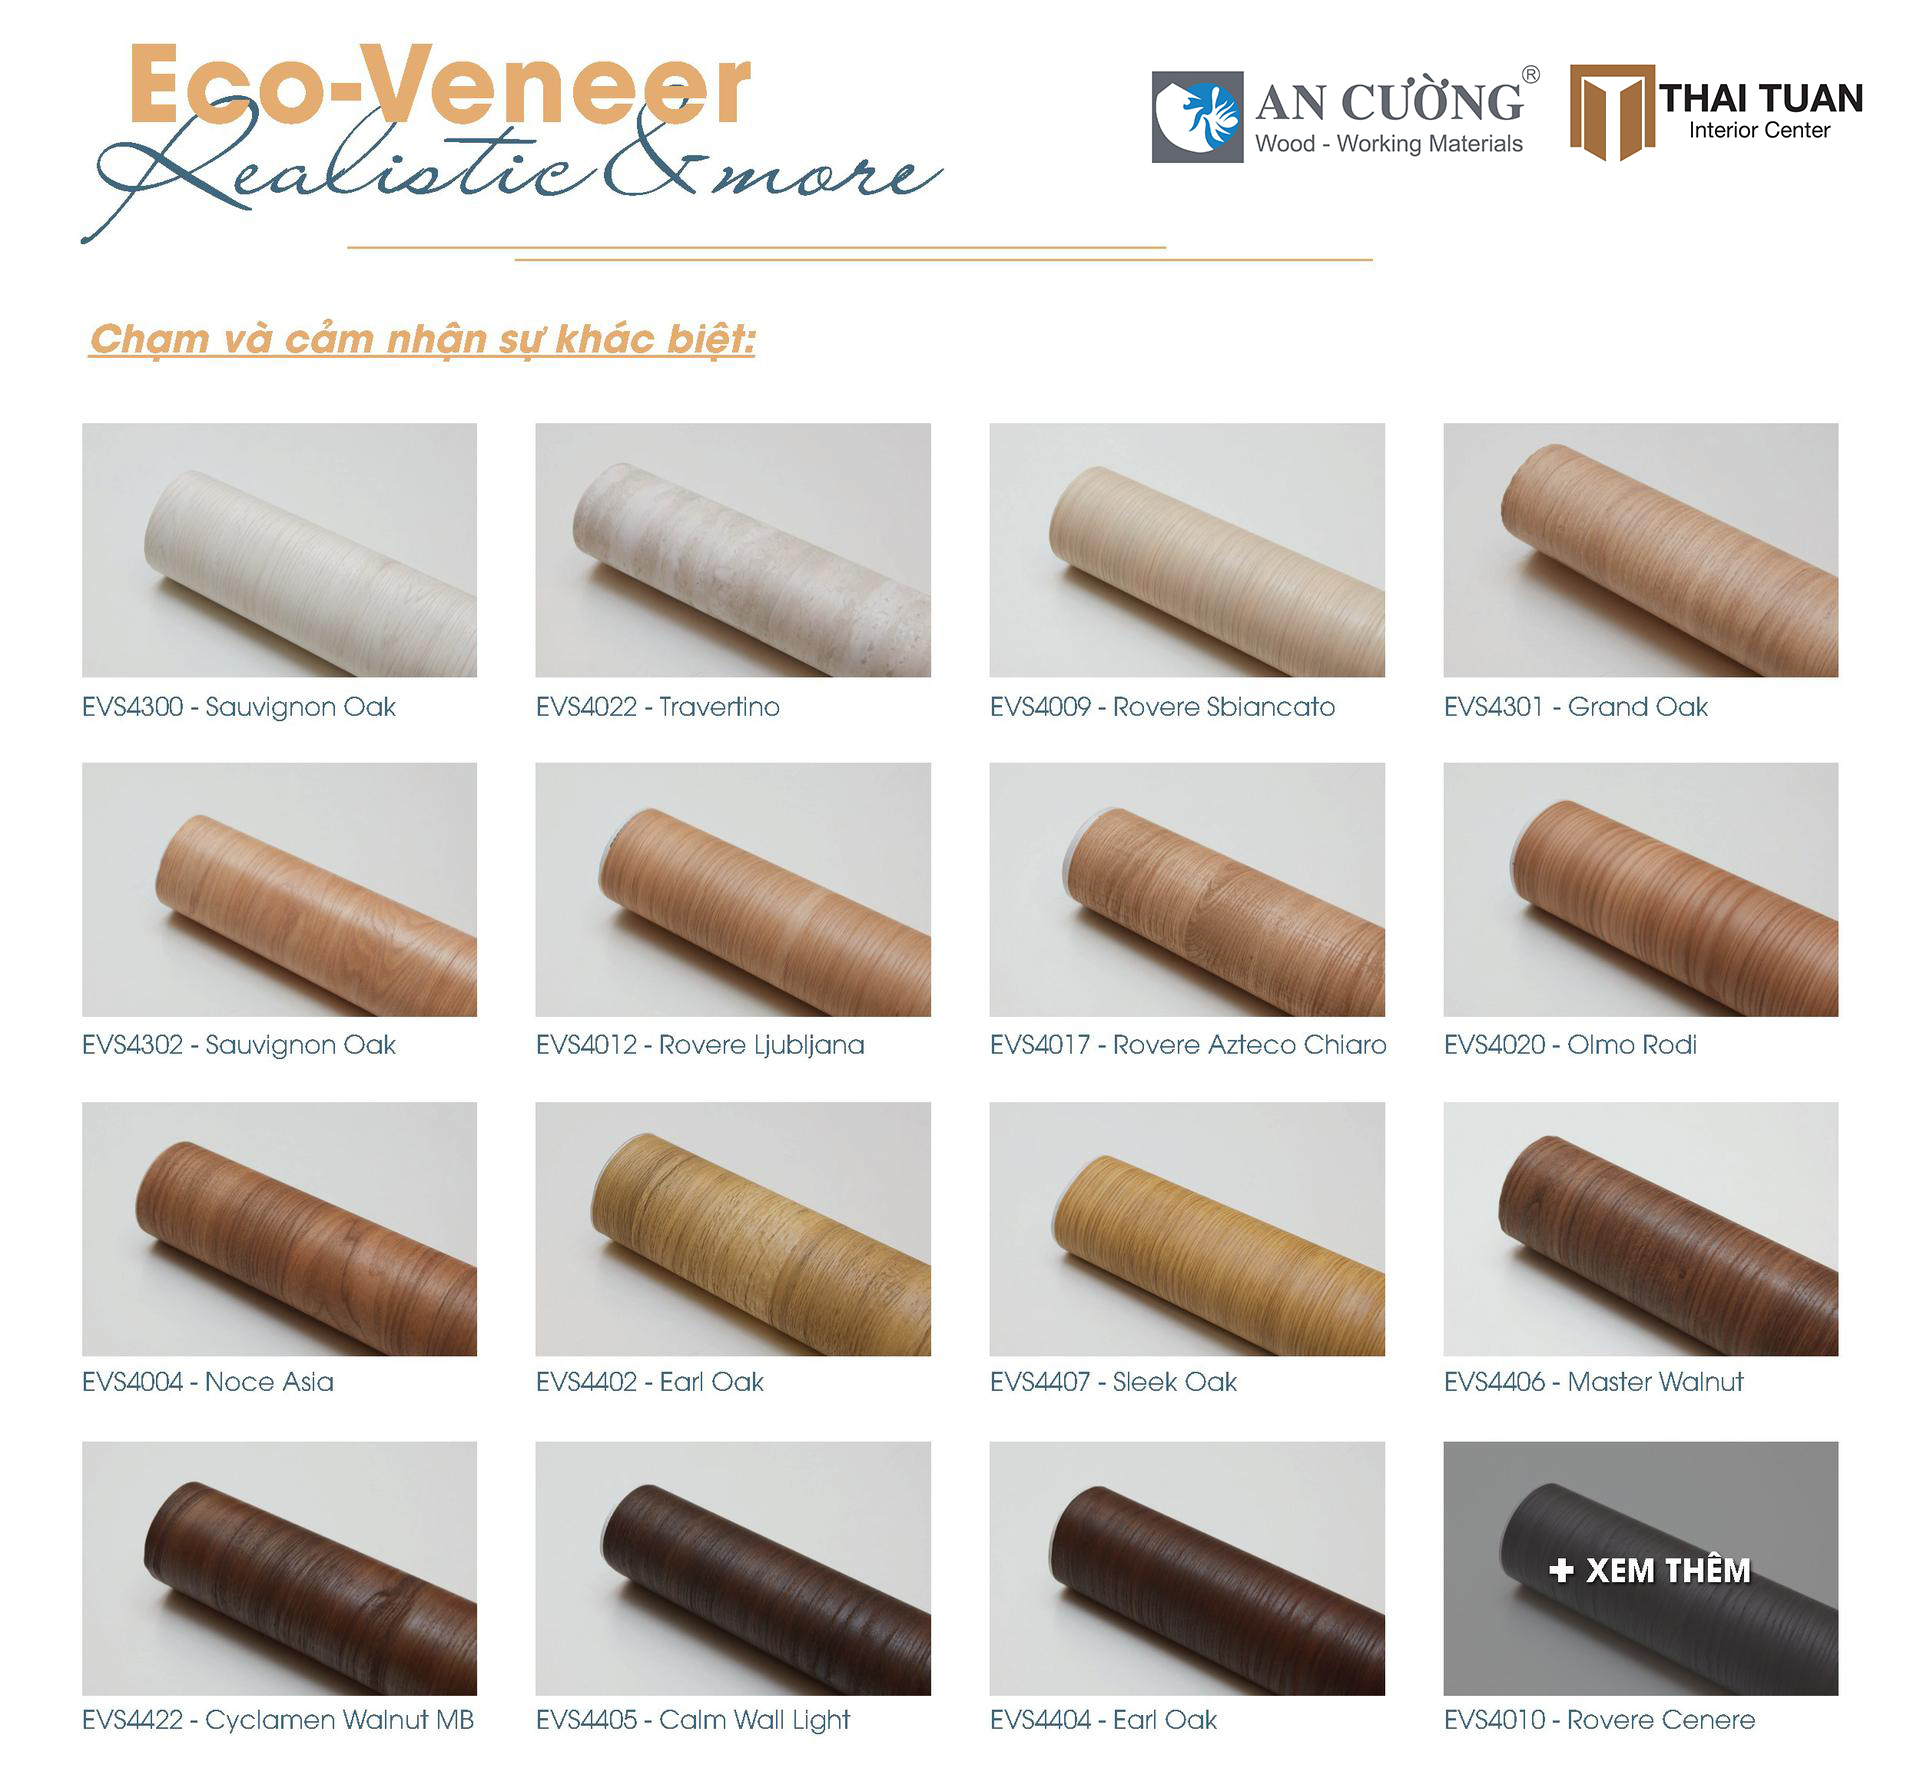 Tìm hiểu về Eco Veneer: Ưu điểm của Eco Veneer